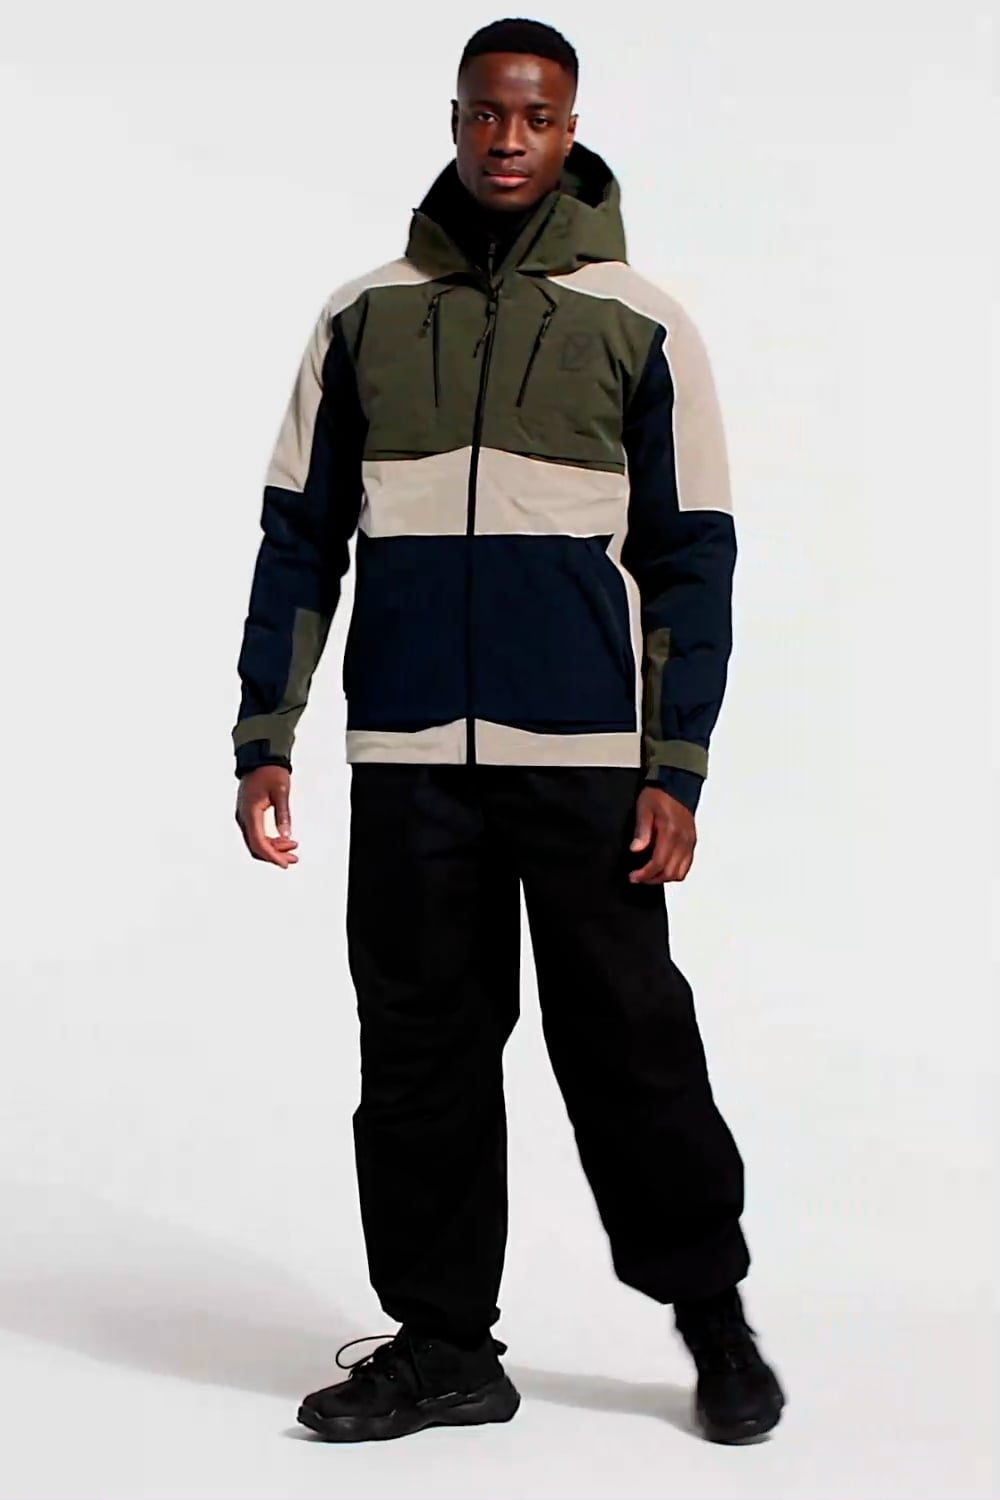 Didriksons Jacket Povel Multicolour 504256-999 order online | Suitable